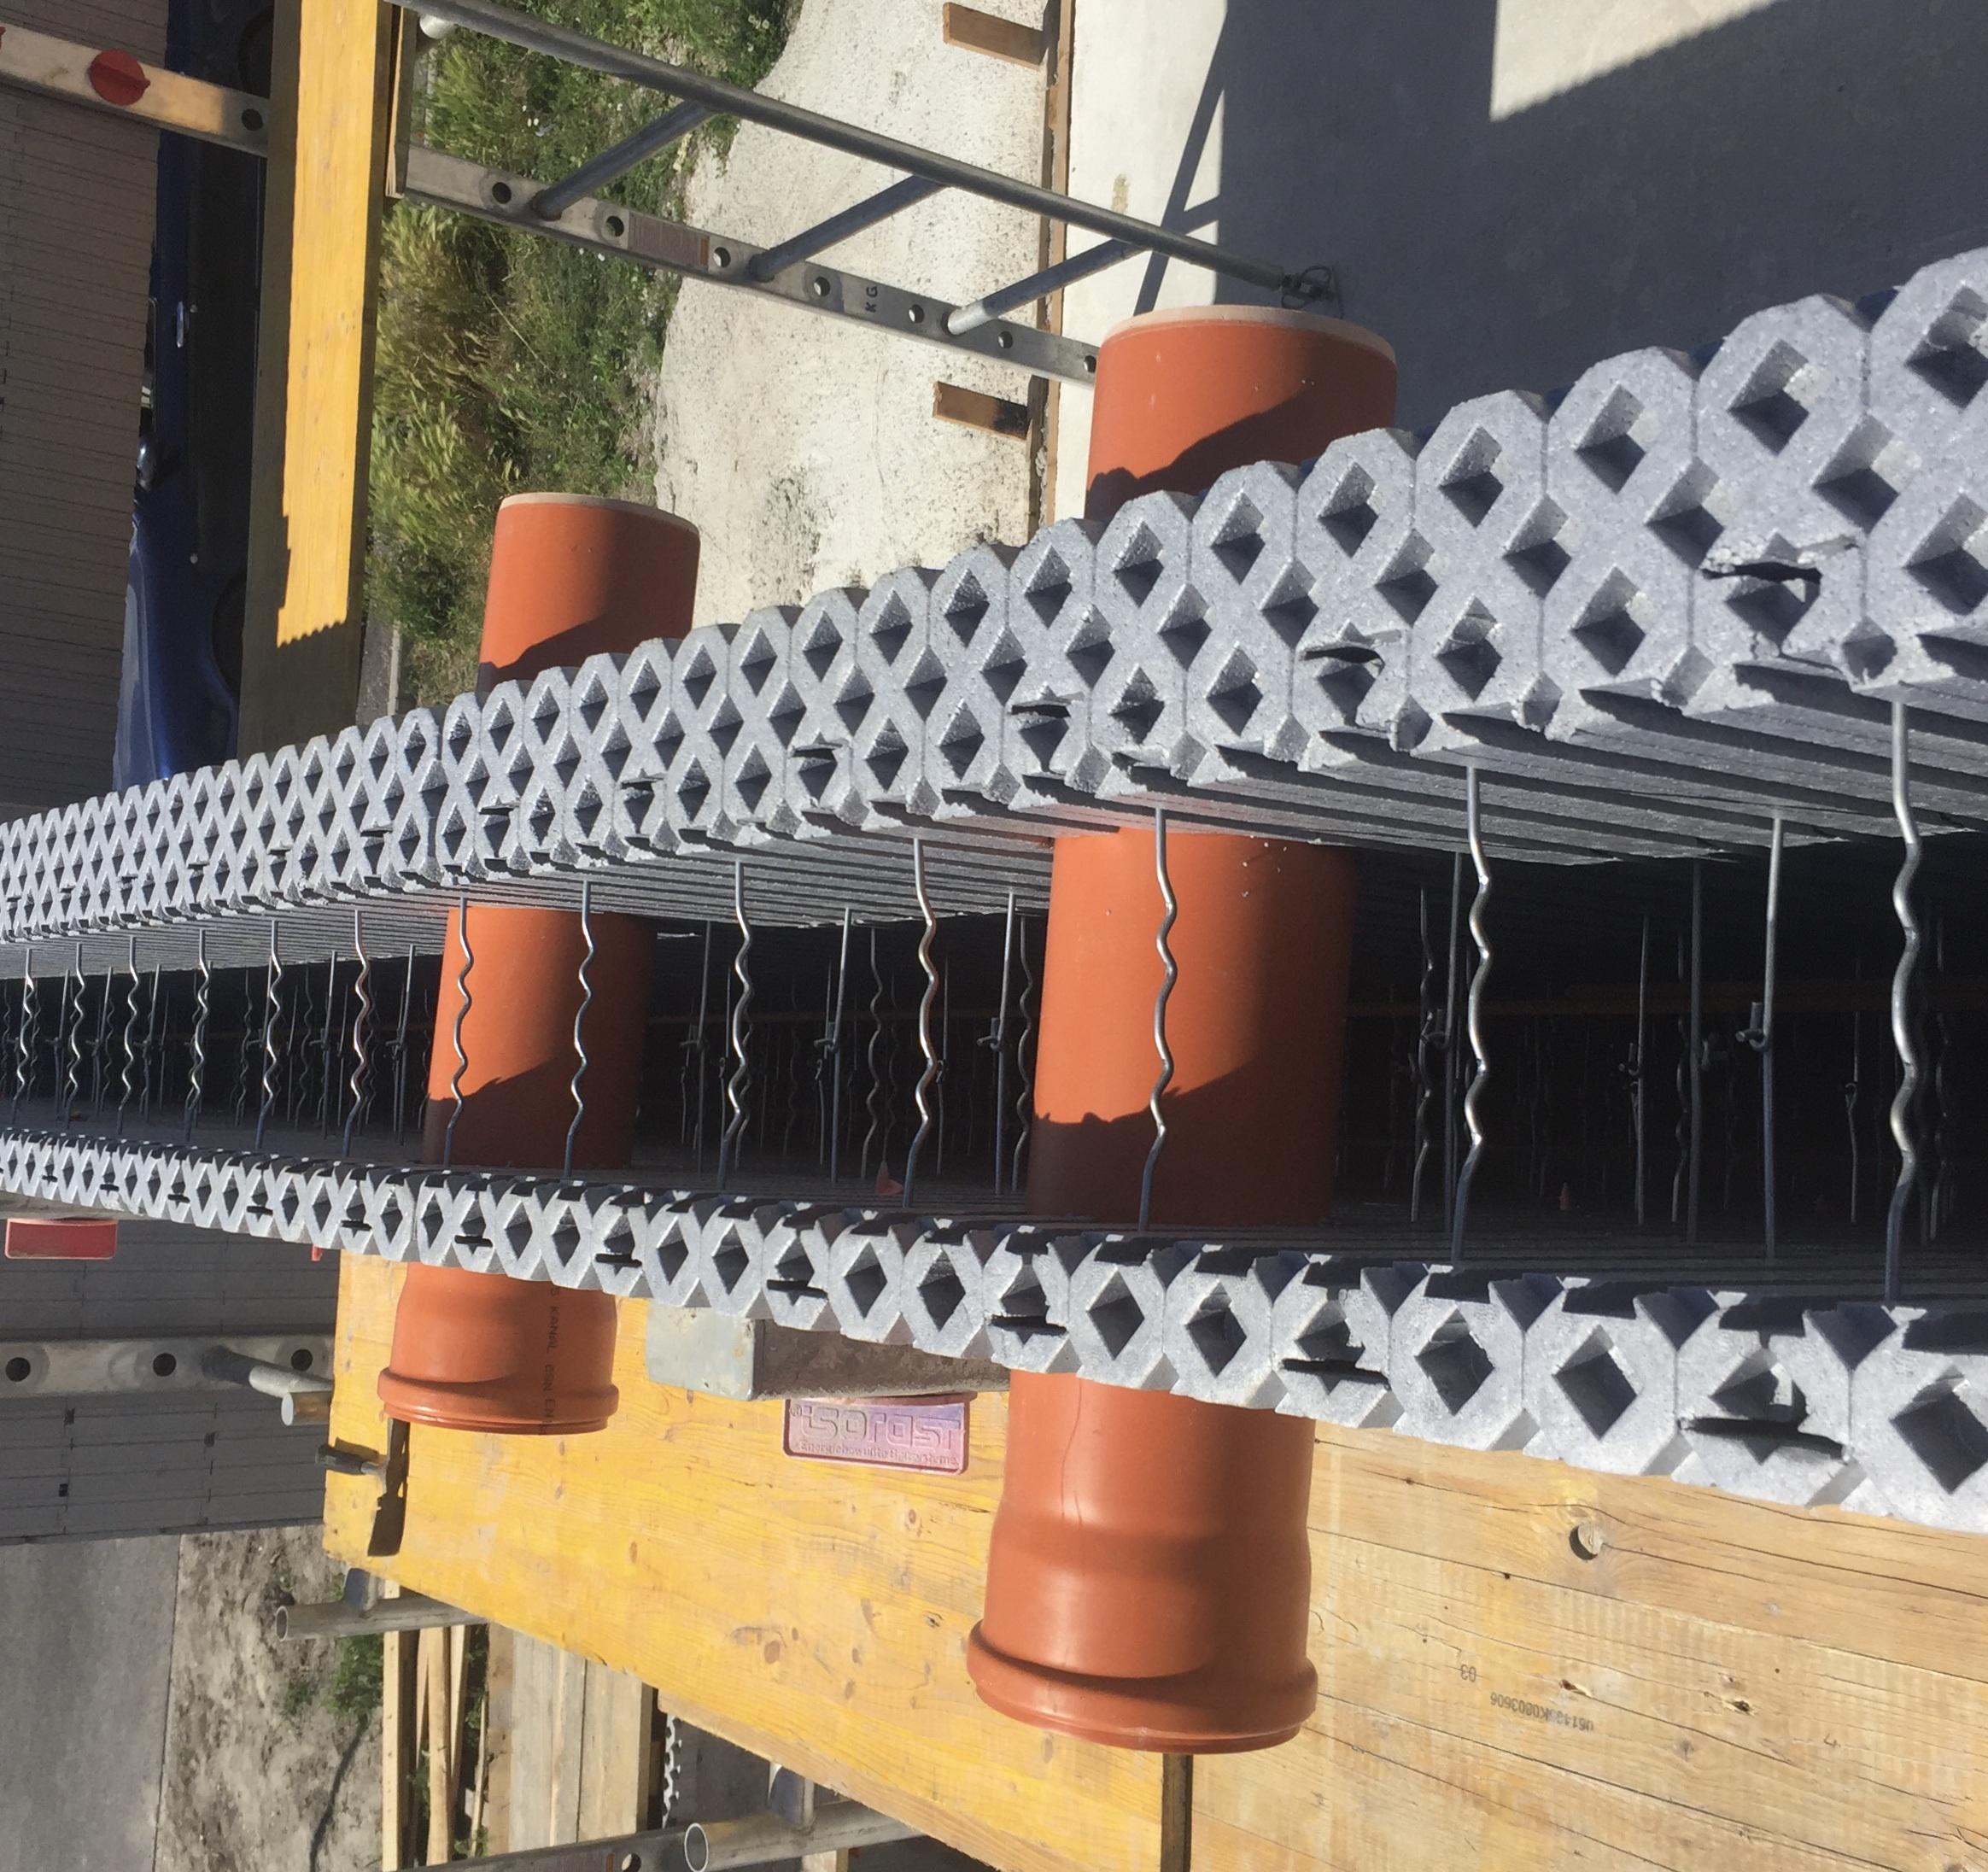 Polystyrénové tvárnice - stenový systém bez tepelných mostov pre nízkoenergetické a pasívne domy - železobetónové steny